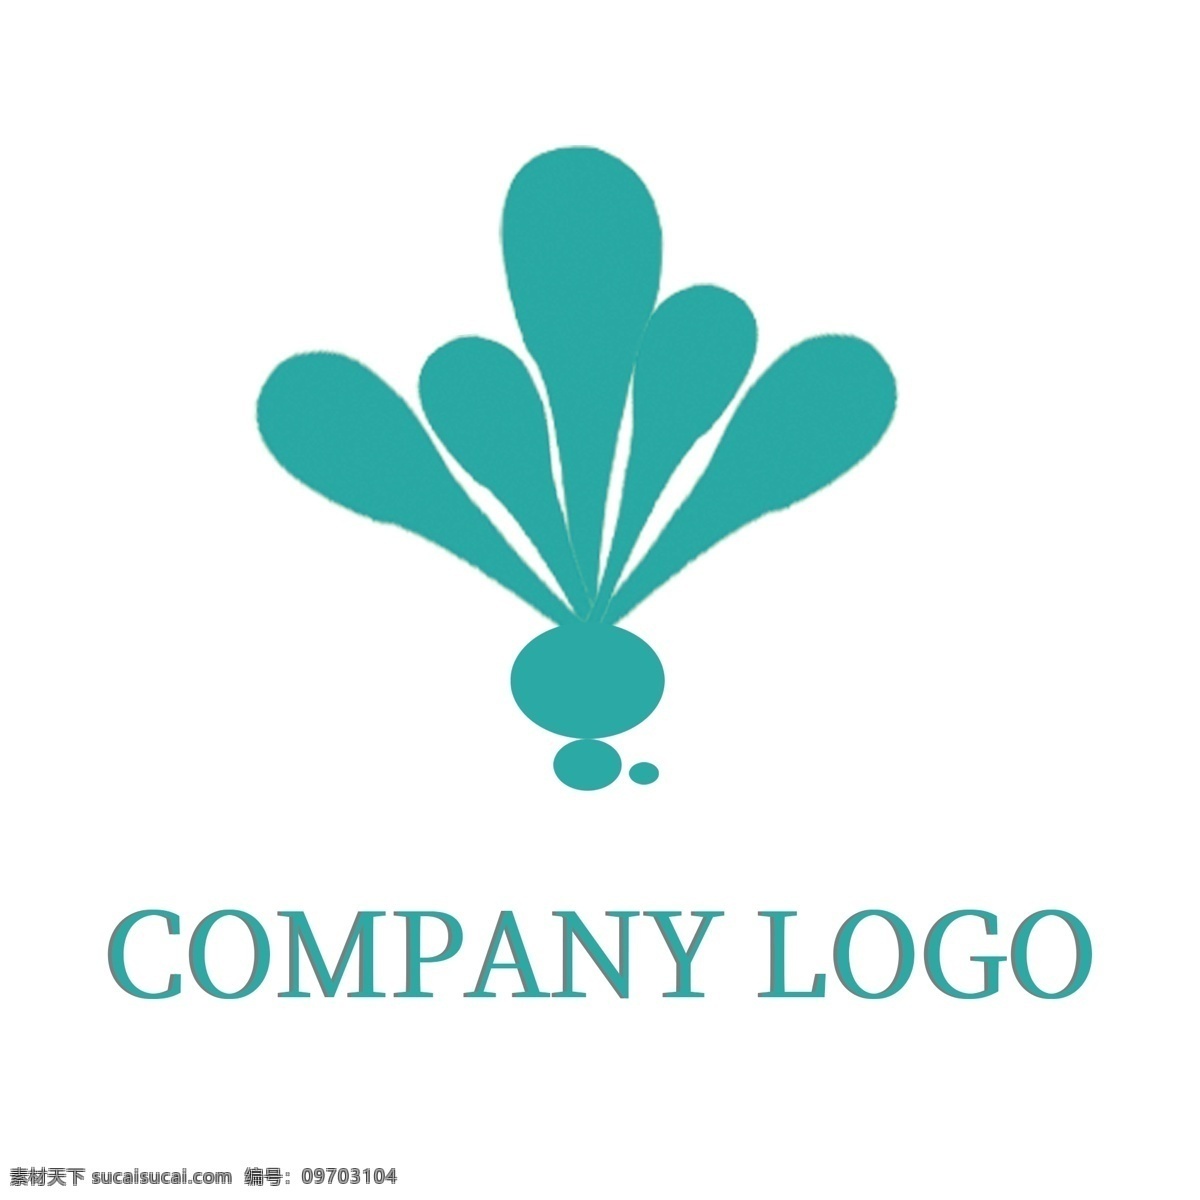 品牌 logo logo设计 服饰 标识 高端品牌标识